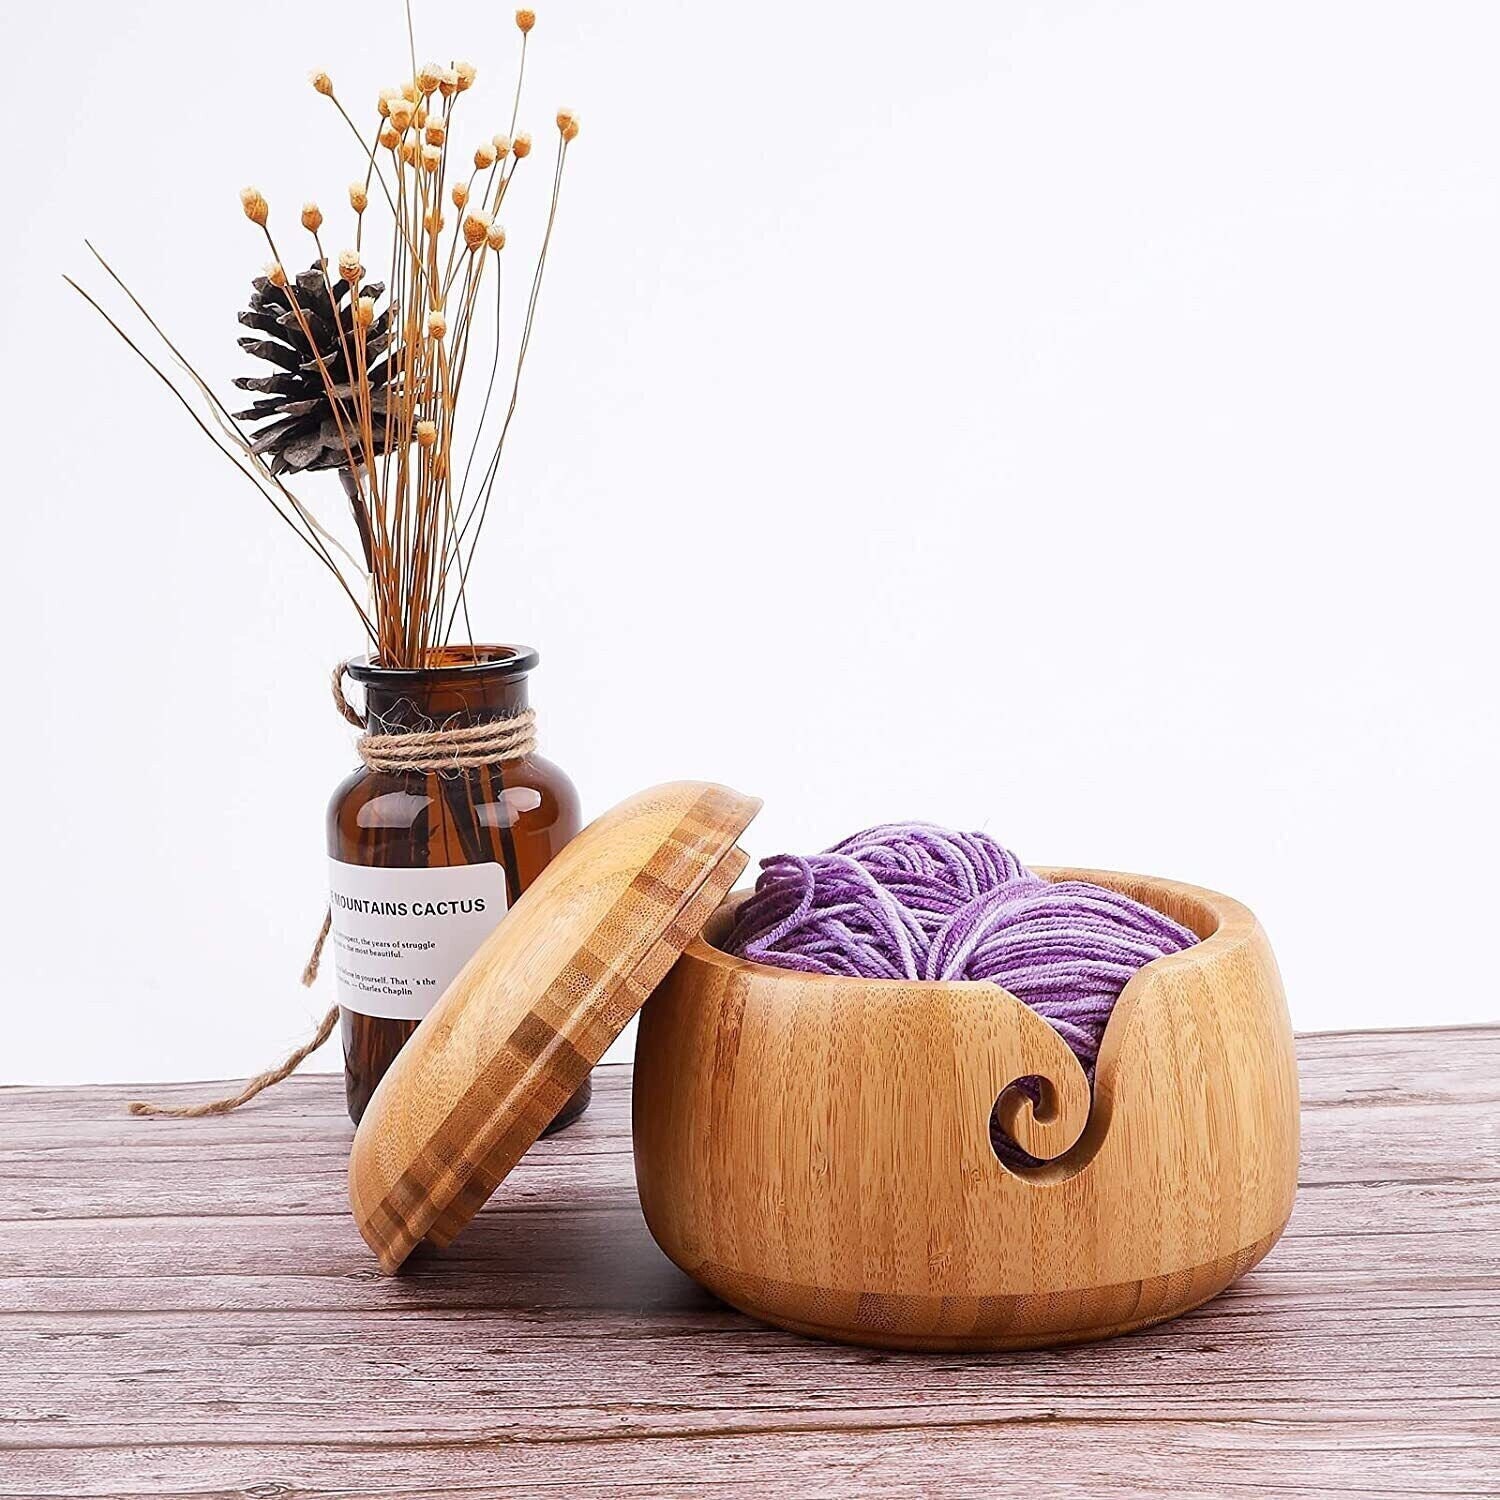 Wooden Yarn Bowl,Yarn Bowls with Lid for Knitting Crochet Yarn